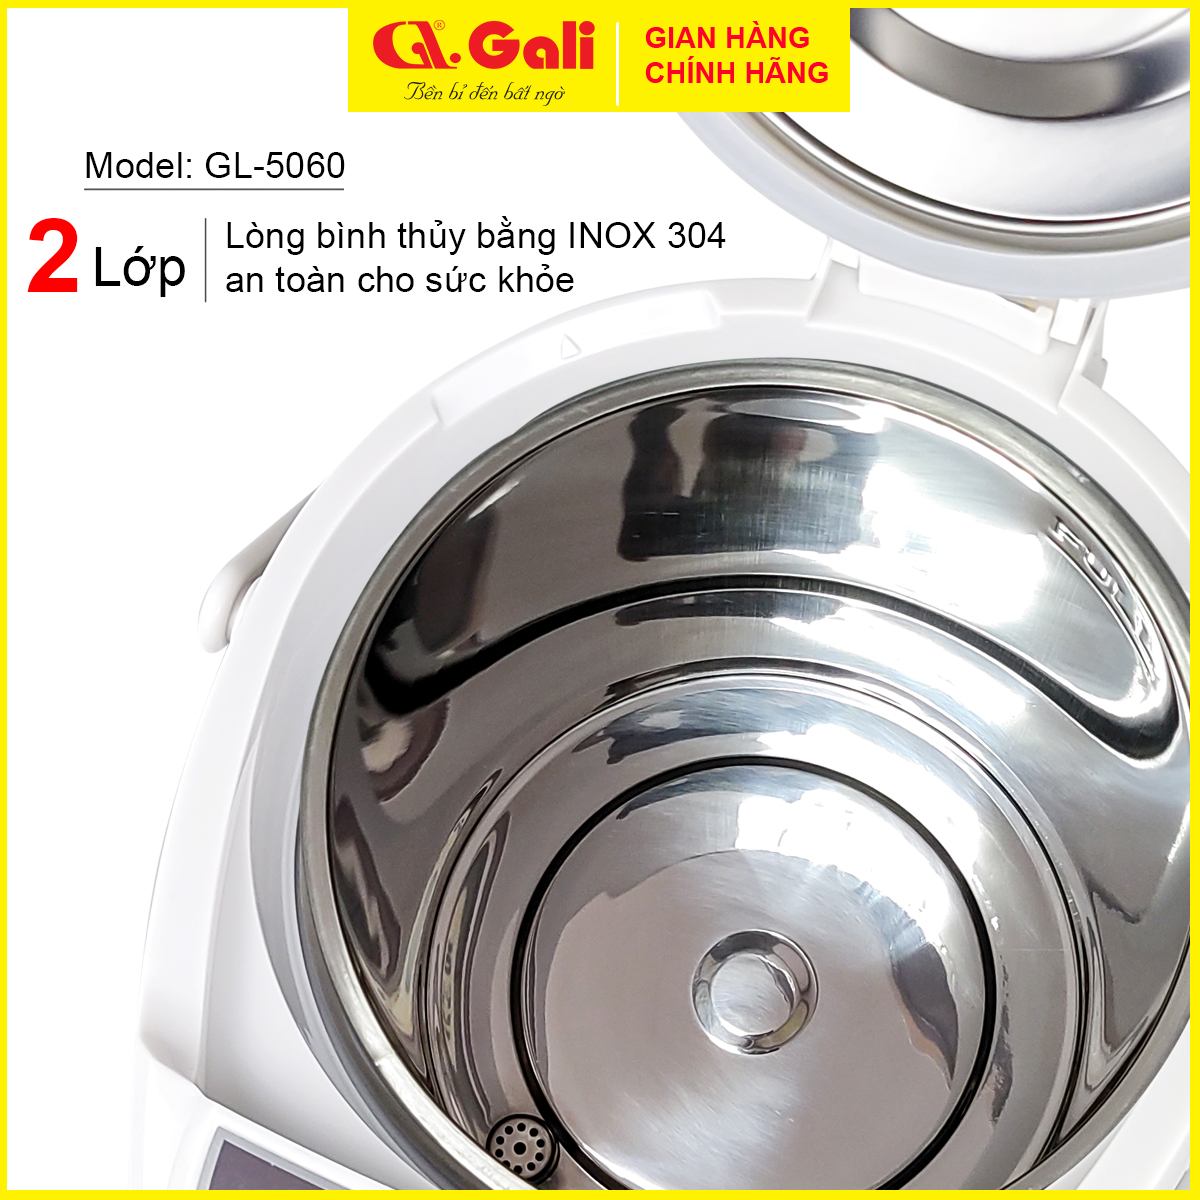 Bình thủy điện Gali, GL-5060 bình đun dung tích 6 lít, phích cấu tạo 2 lớp ngoài bằng thiết, ruột inox 304, hàng chính hãng 100%, bảo hành 24 tháng Gali